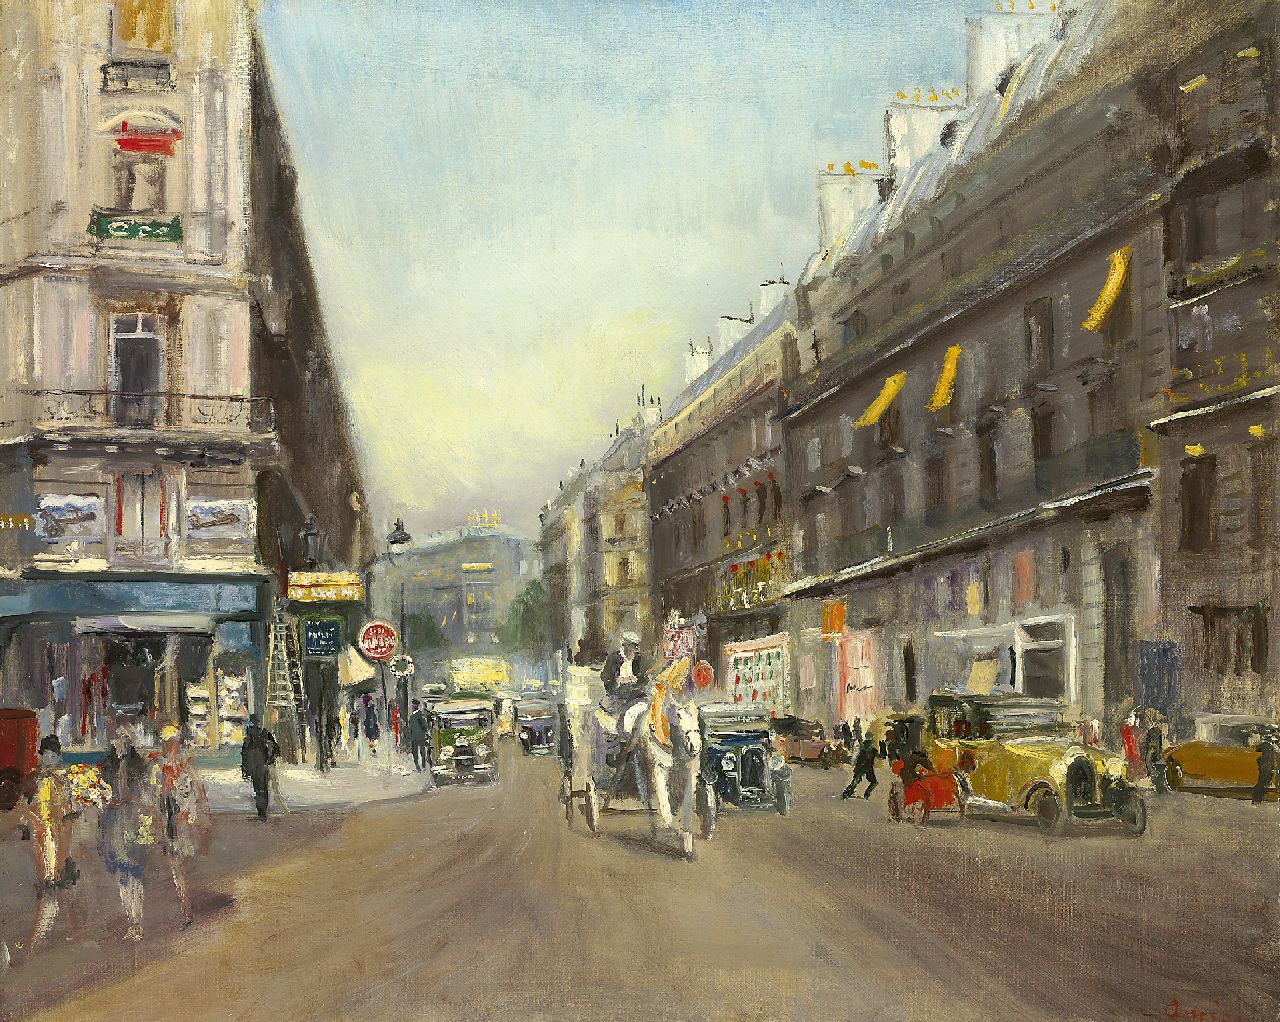 Lucien Andrion | Stadsgezicht in Parijs, olieverf op doek, 65,0 x 80,9 cm, gesigneerd r.o. en gedateerd 1929 (op etiket)